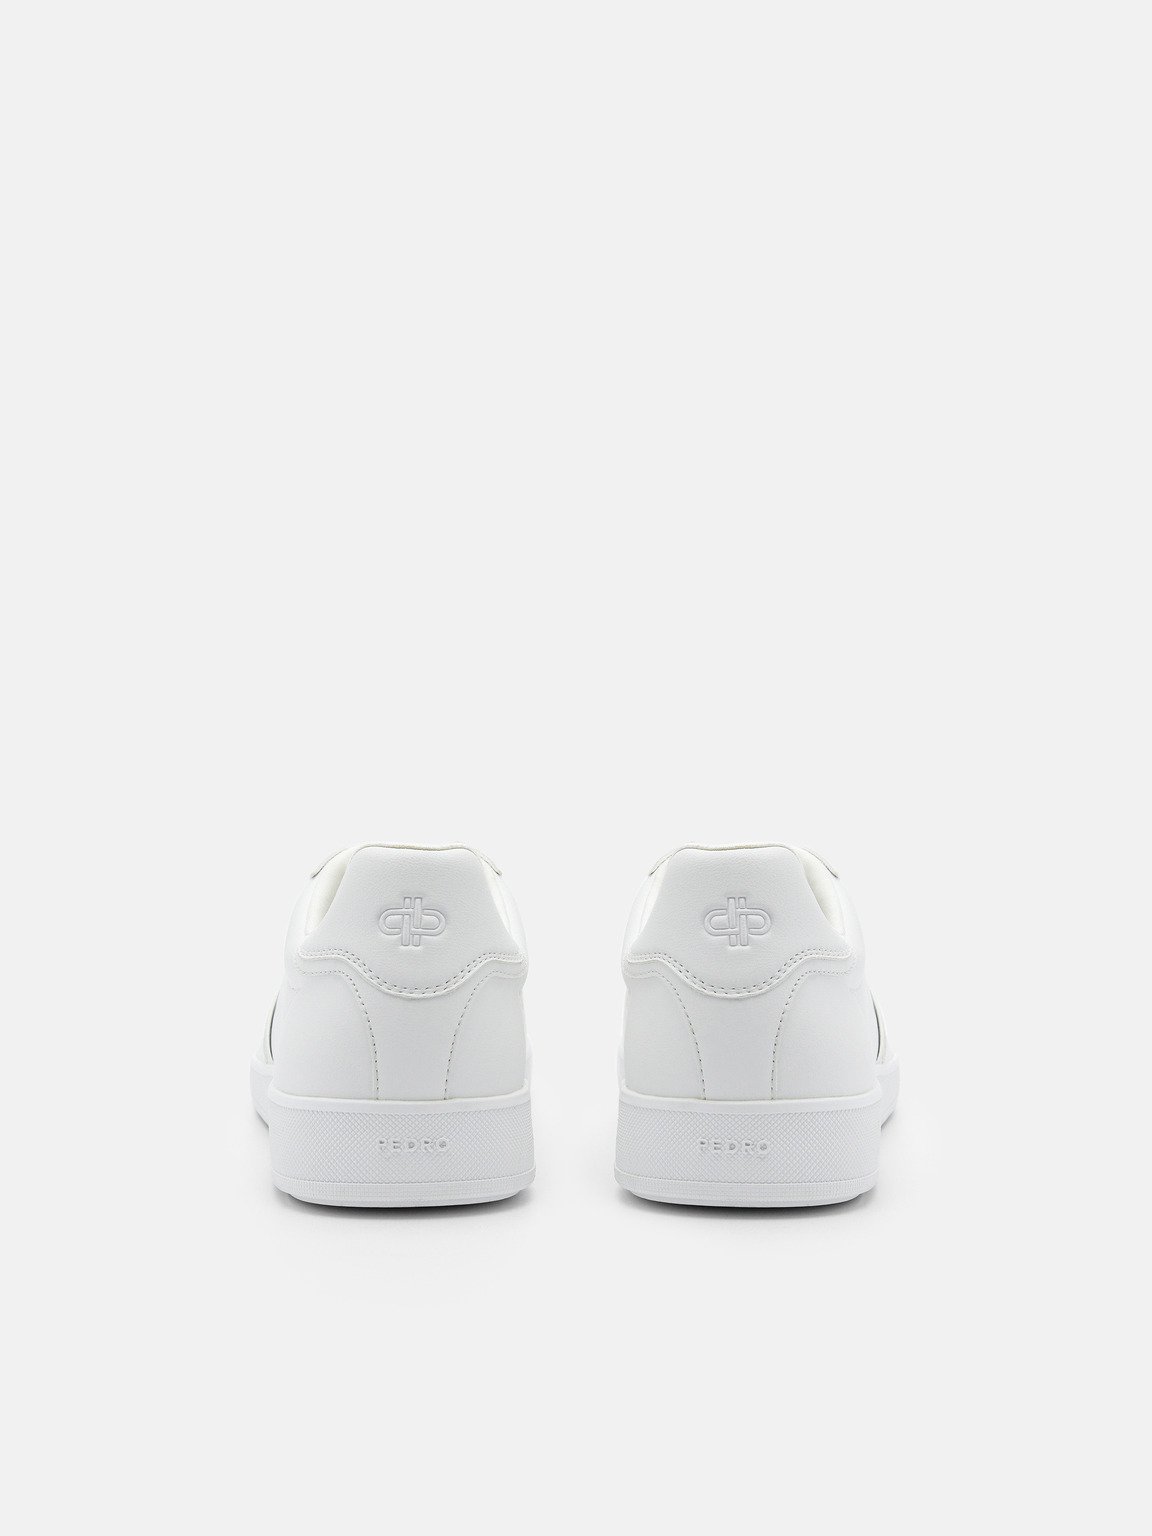 PEDRO Icon Fleet Sneakers, White